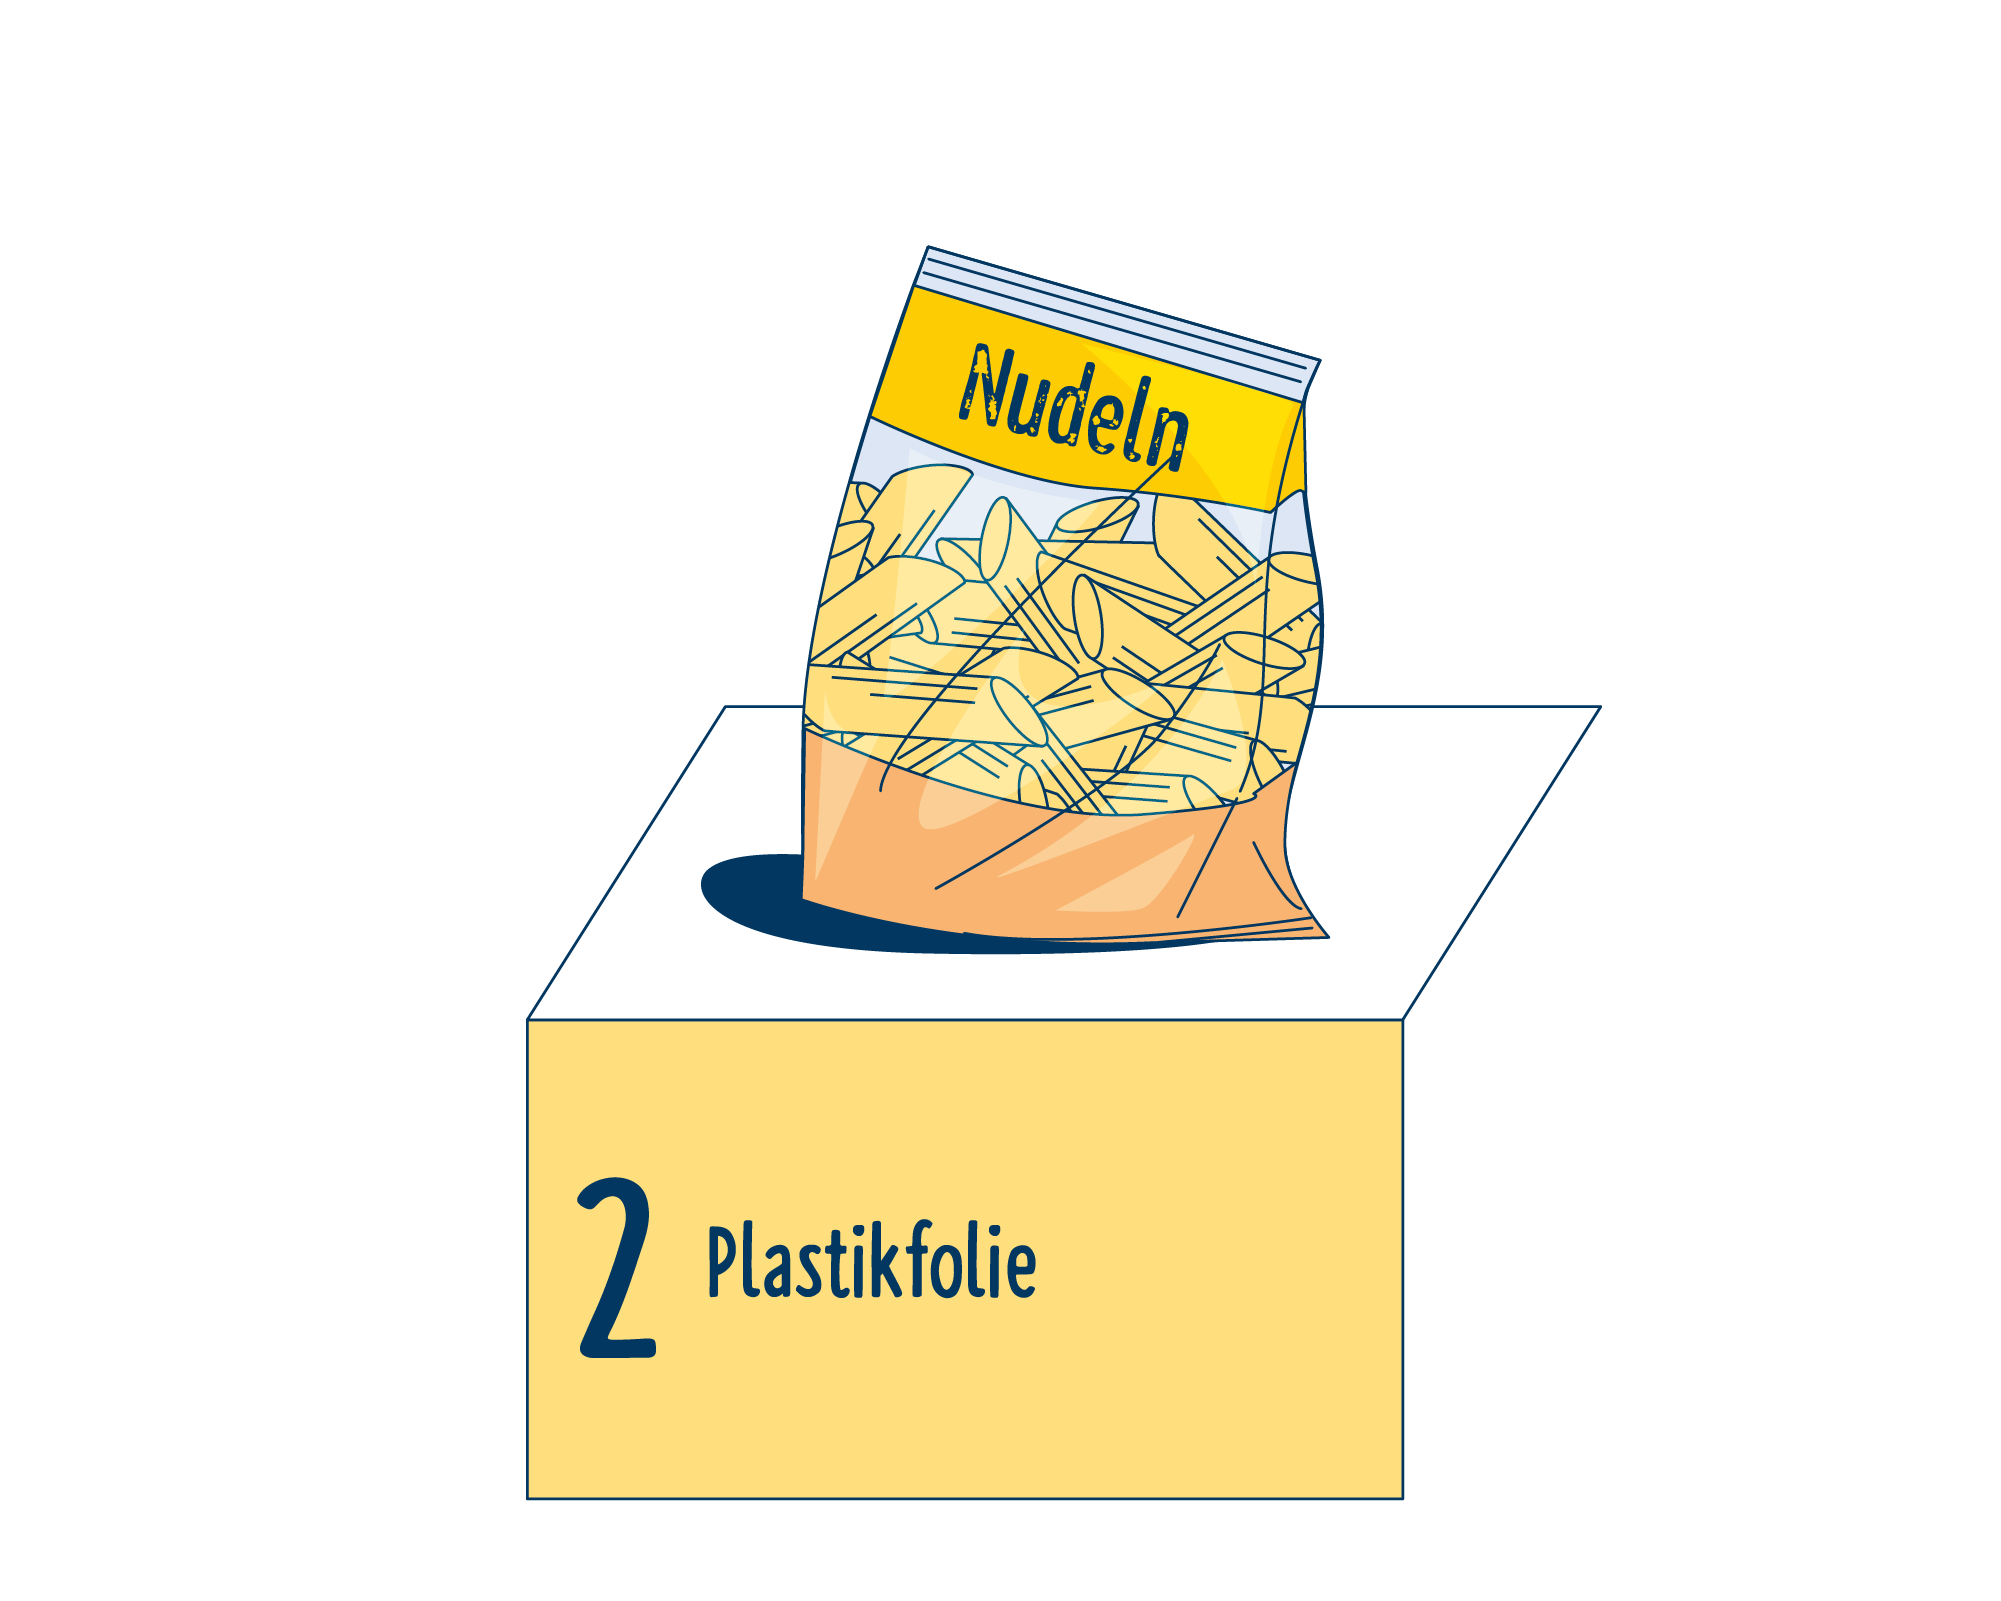 Bild Produktverpackung von Nudeln eingeordnet auf Platz 2, bestehend aus Plastikfolie.